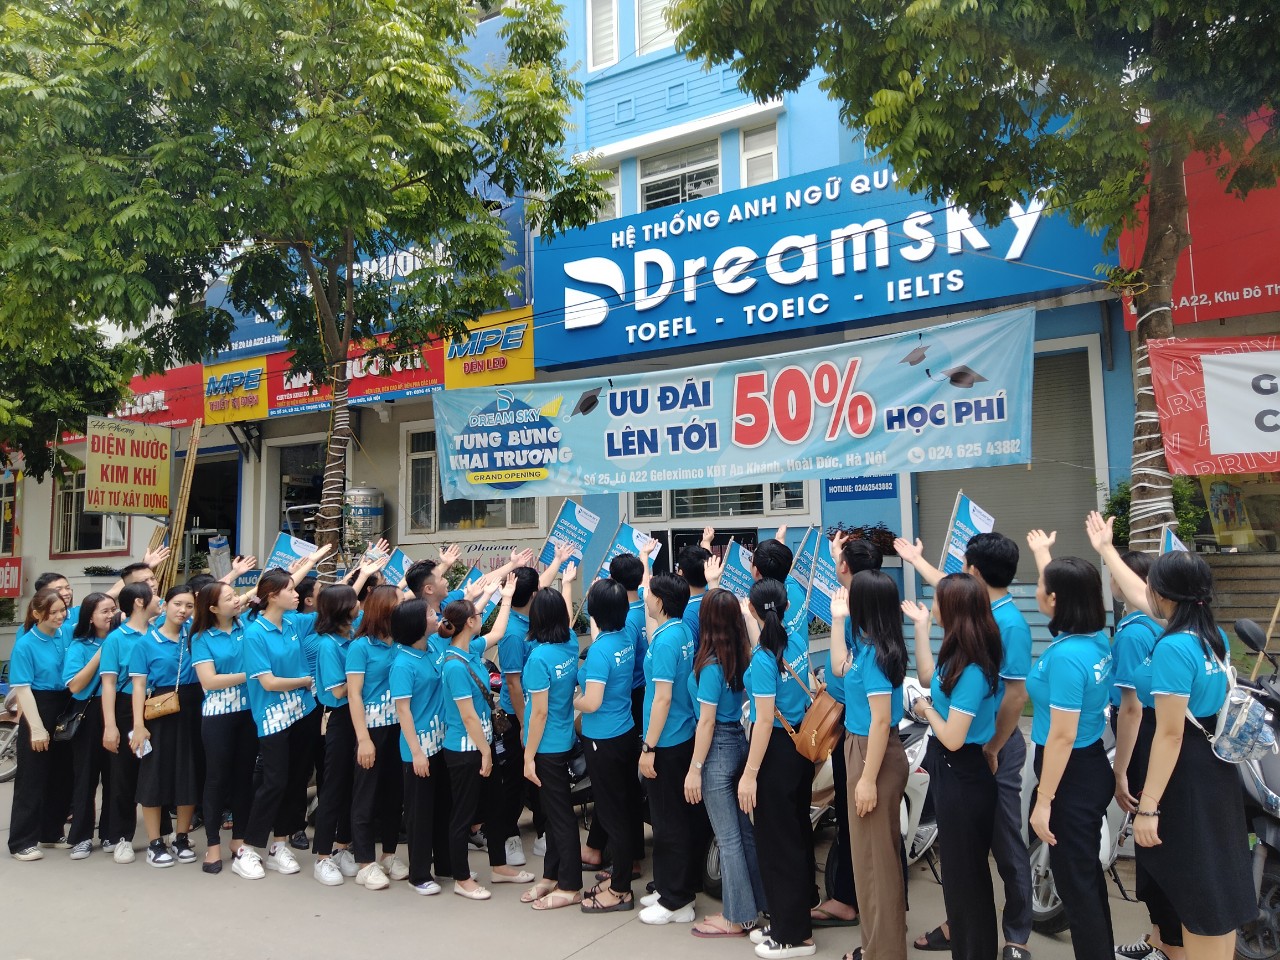 Hệ thống Anh ngữ Quốc tế Dream Sky với 6000+ học viên theo học tại 10 cơ sở ở Hà Nội